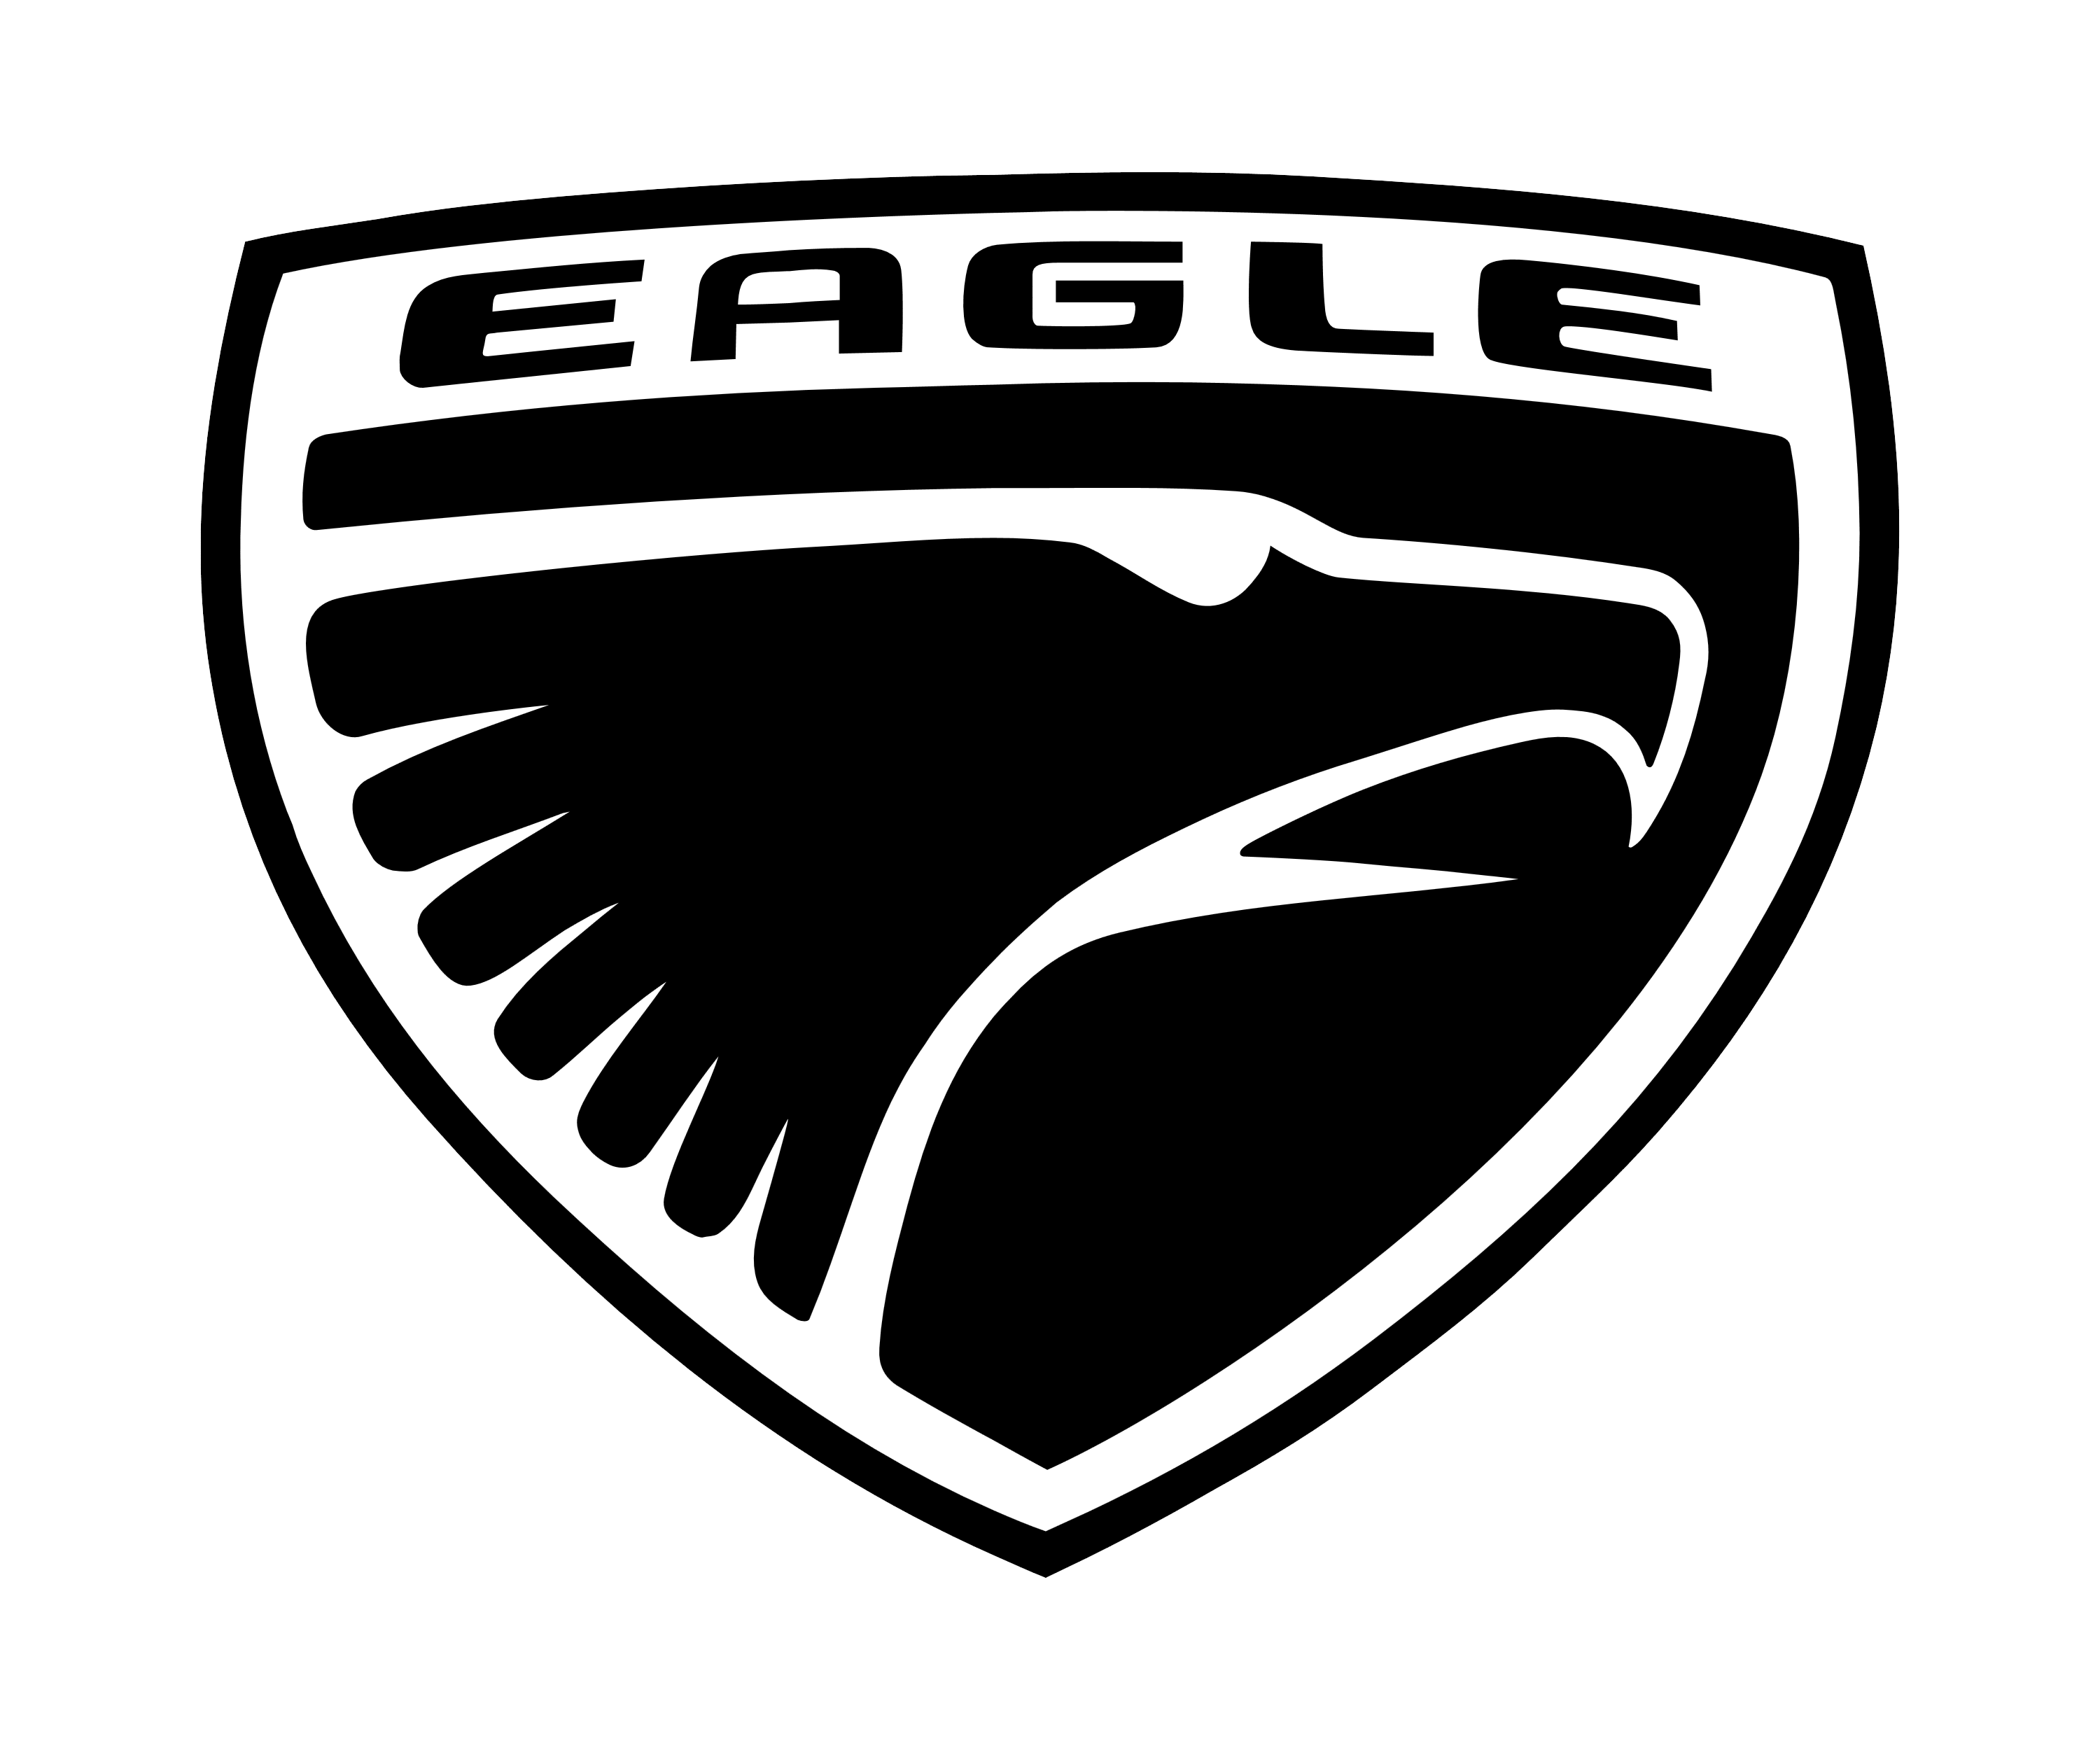 Вектор Eagles logo PNG высококачественный образ